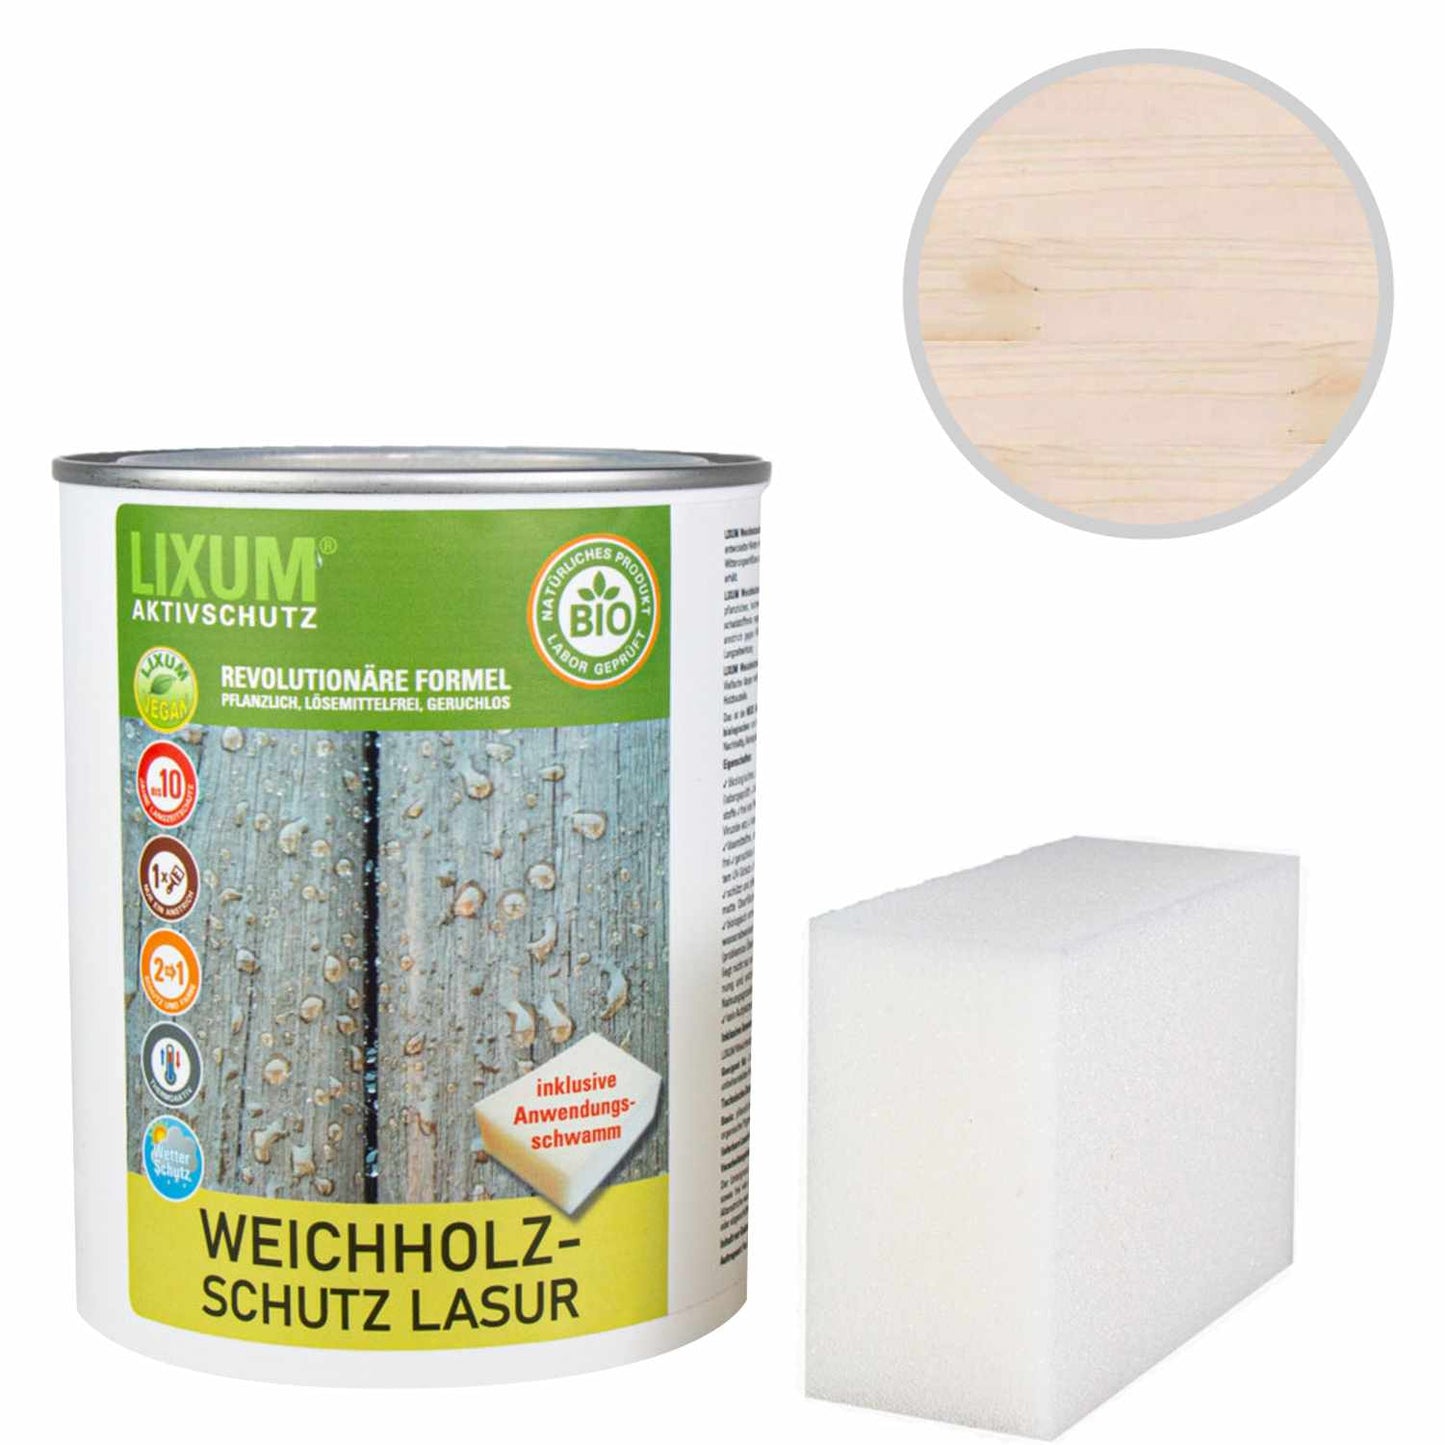 Glassa di protezione delle legno del legno biologico - pino - protezione del legno e cura del legno per l'esterno